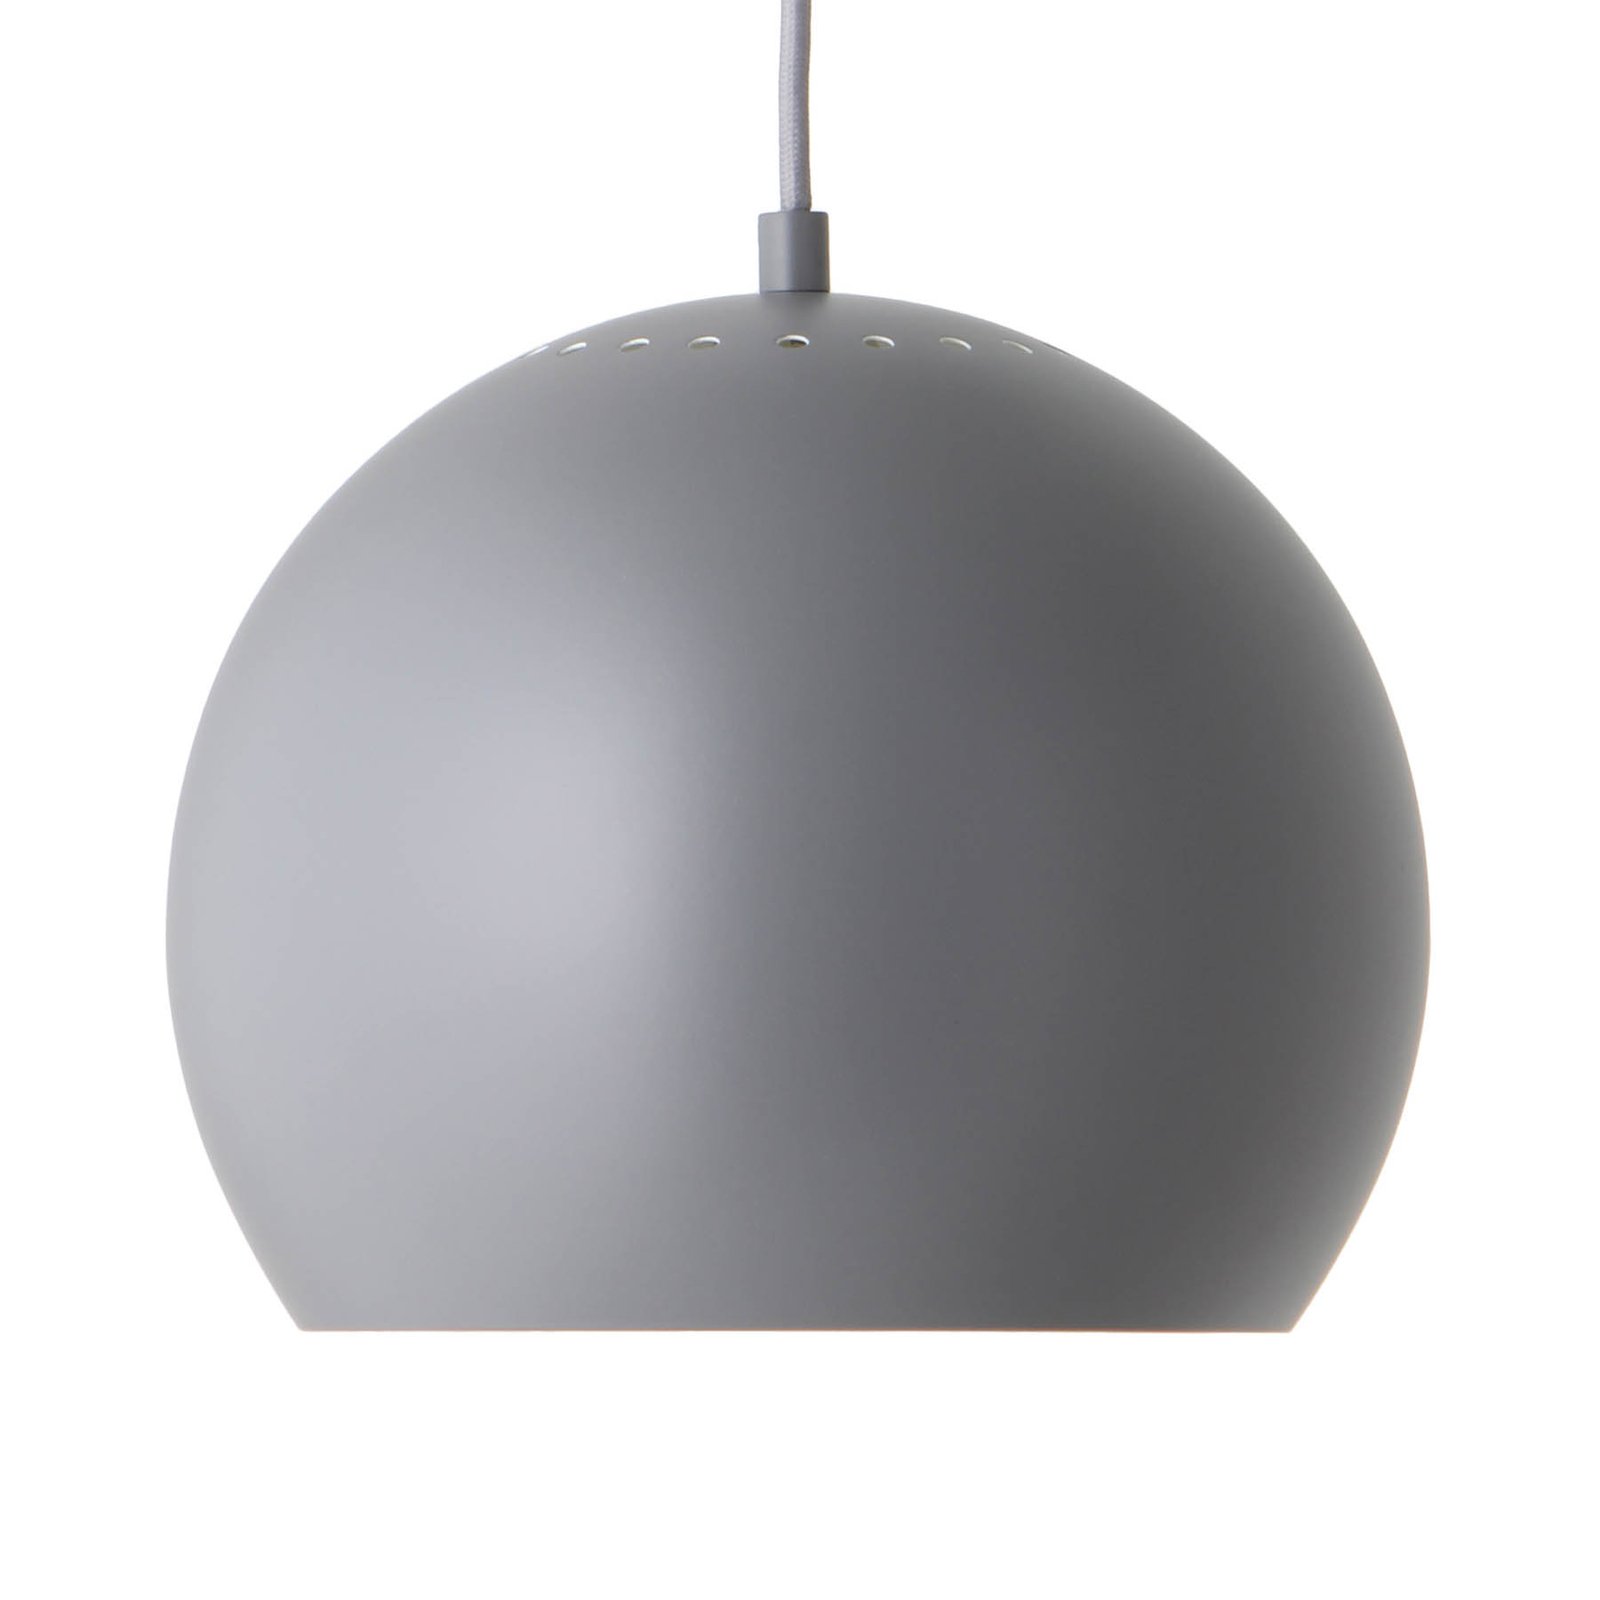 FRANDSEN Ball hängande lampa, Ø 25 cm, ljusgrå matt